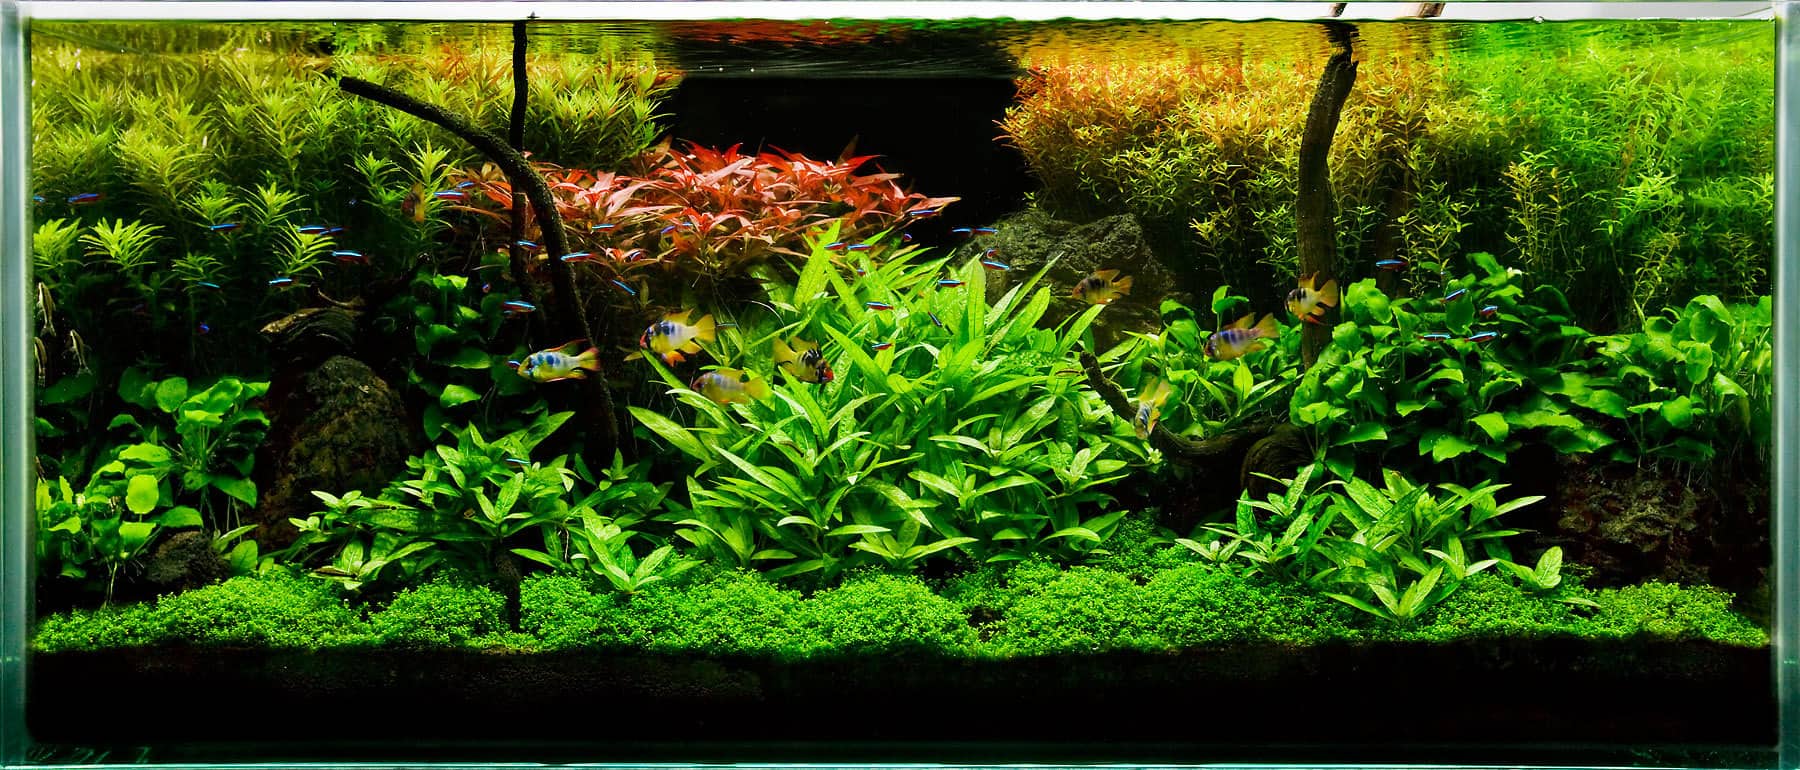 Best Fish Tank Plants Plants aquarium fish tank fishroom benefits